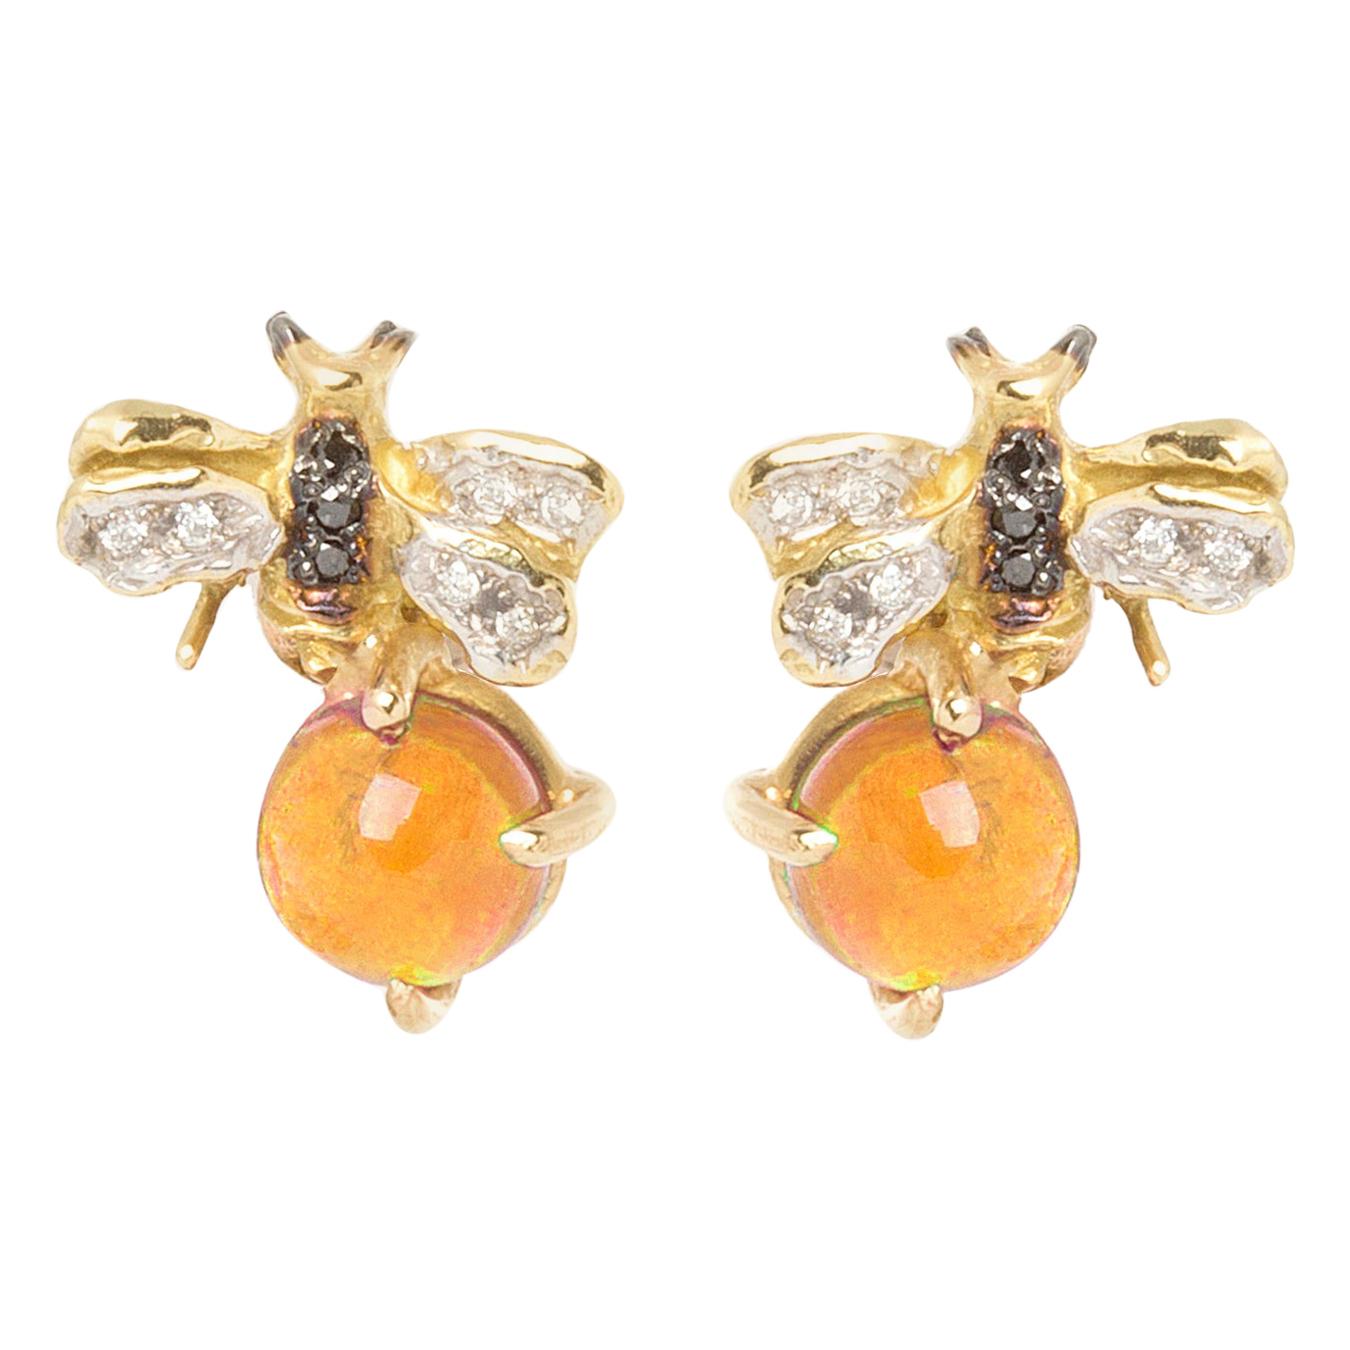 Clous d'oreilles en or 18 carats avec citrines et diamants blancs de 0,10 carat et diamants noirs en forme d'abeilles